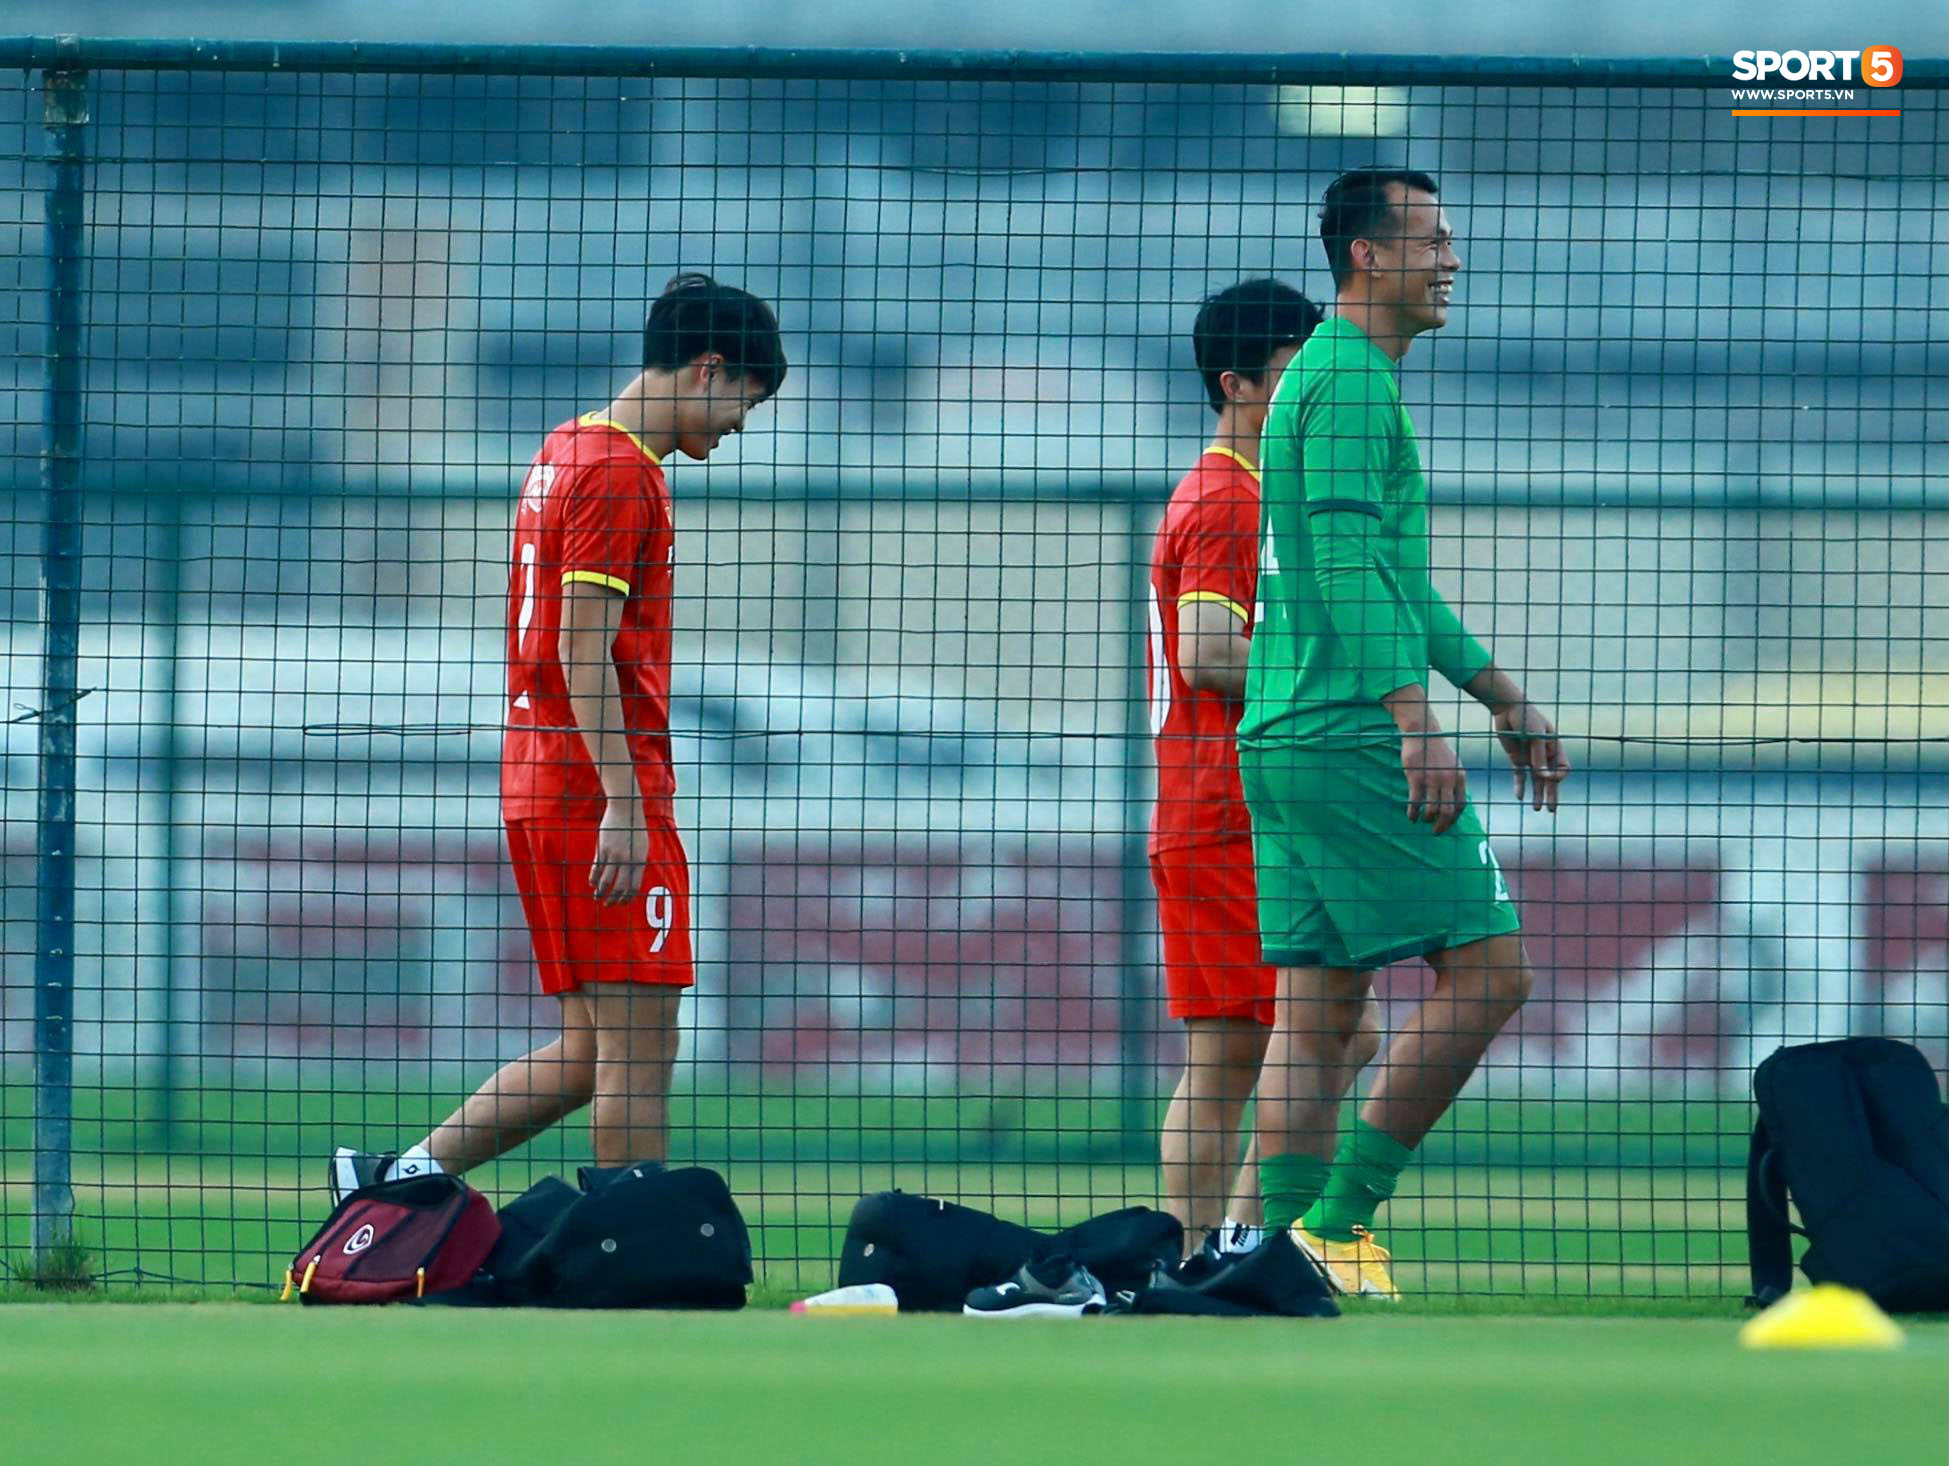 [Trực tiếp từ UAE] Buổi tập đầu tiên của tuyển Việt Nam sau trận gặp Indonesia: Tuấn Anh, Văn Toàn cùng có mặt - Ảnh 8.